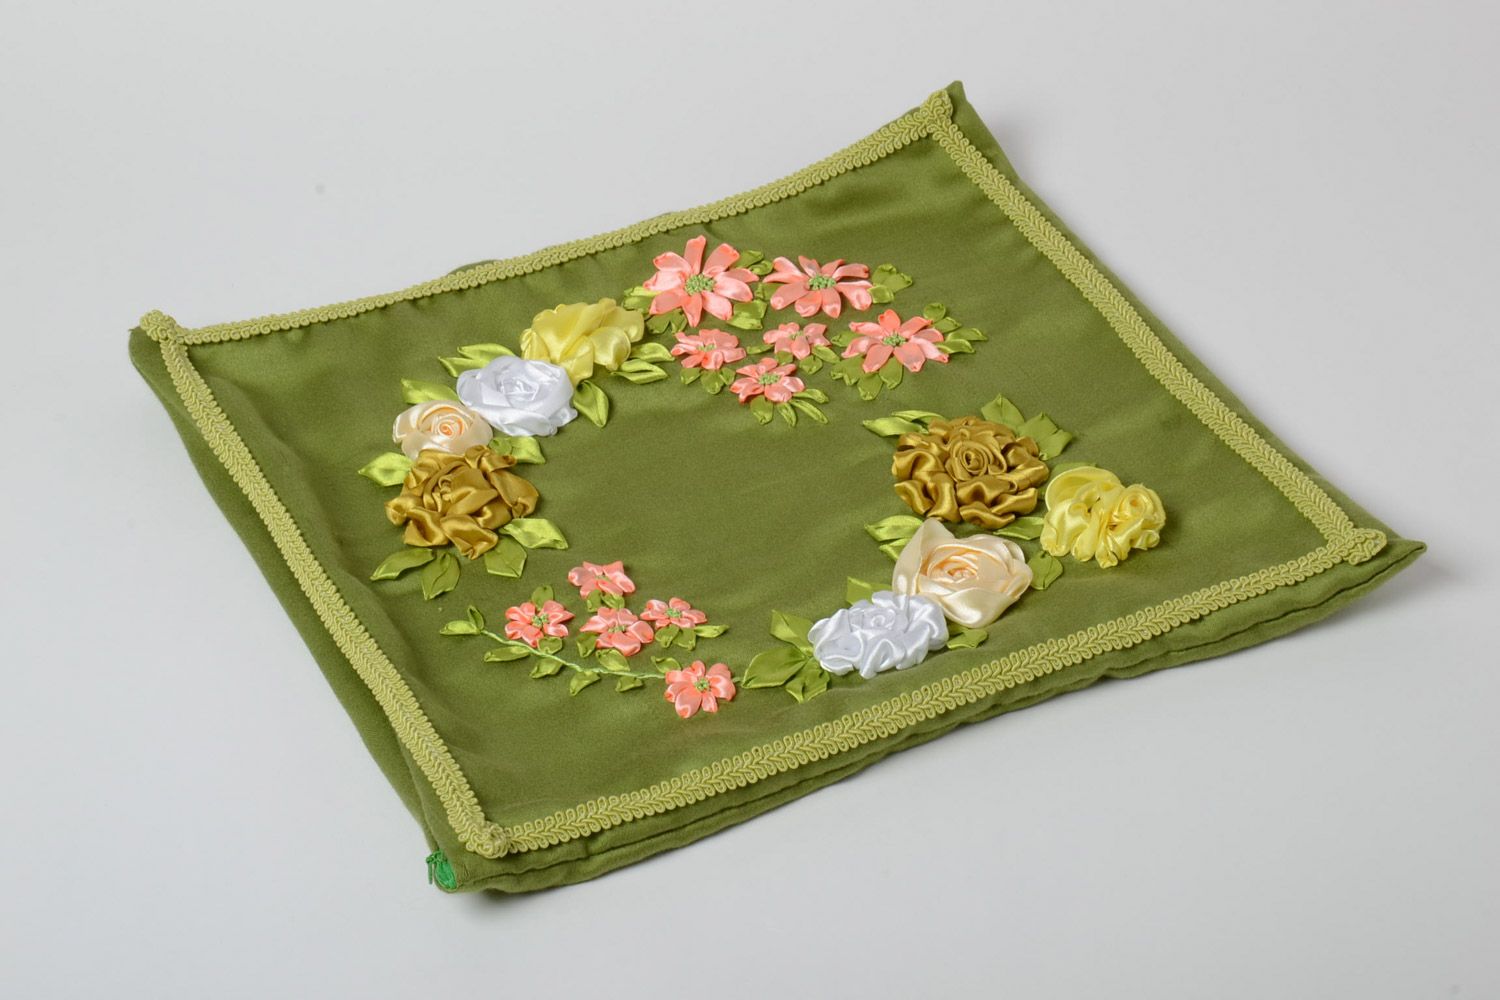 Federa verde fatta a mano biancheria per la casa federa con fiori di raso  foto 2